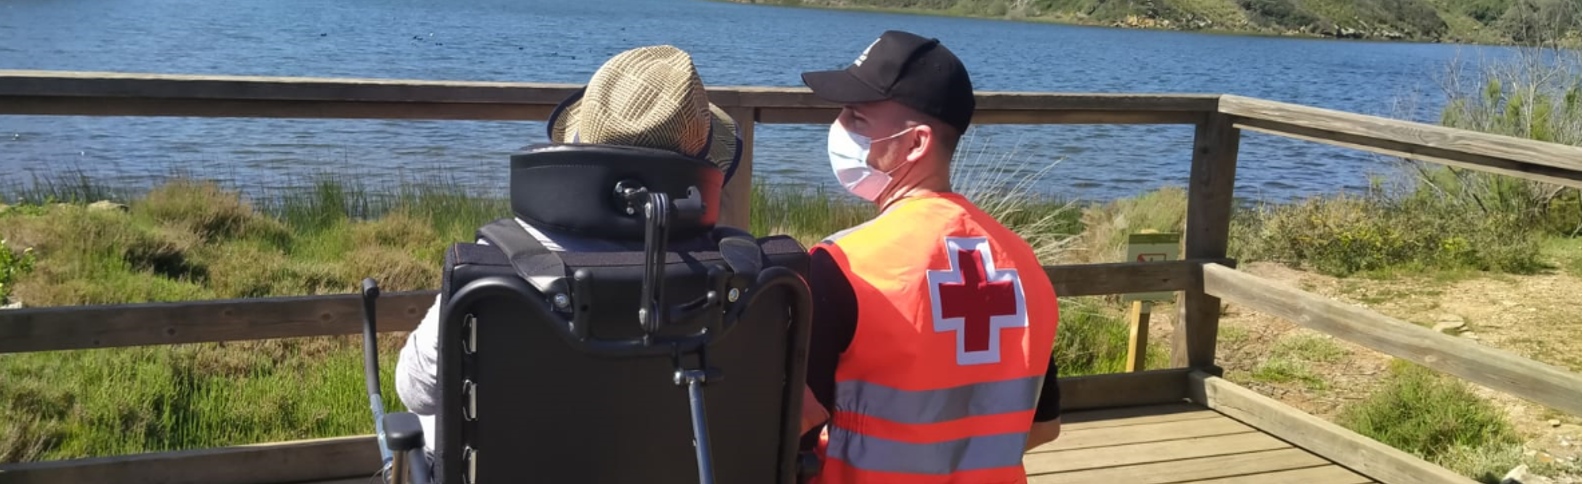 Llega a Cruz Roja en Menorca la primera silla Joëlette